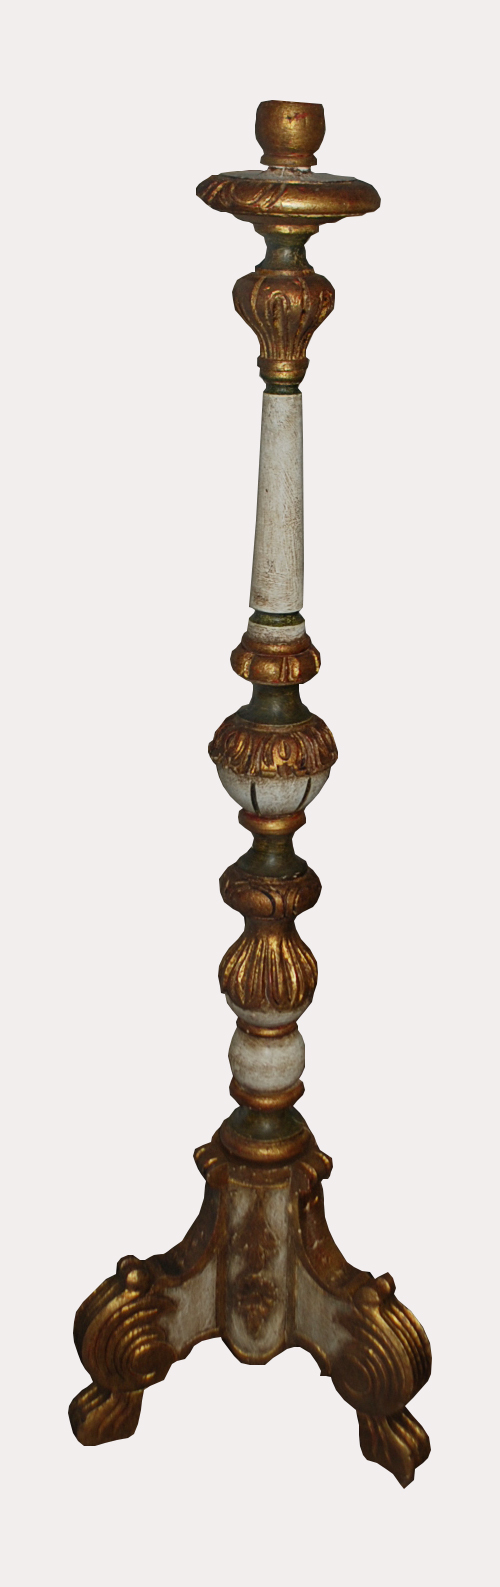 Pied de lampadaire en bois peint et doré à décor de feuillage stylisé, se terminant par trois pieds cambrés. XXe siècle.